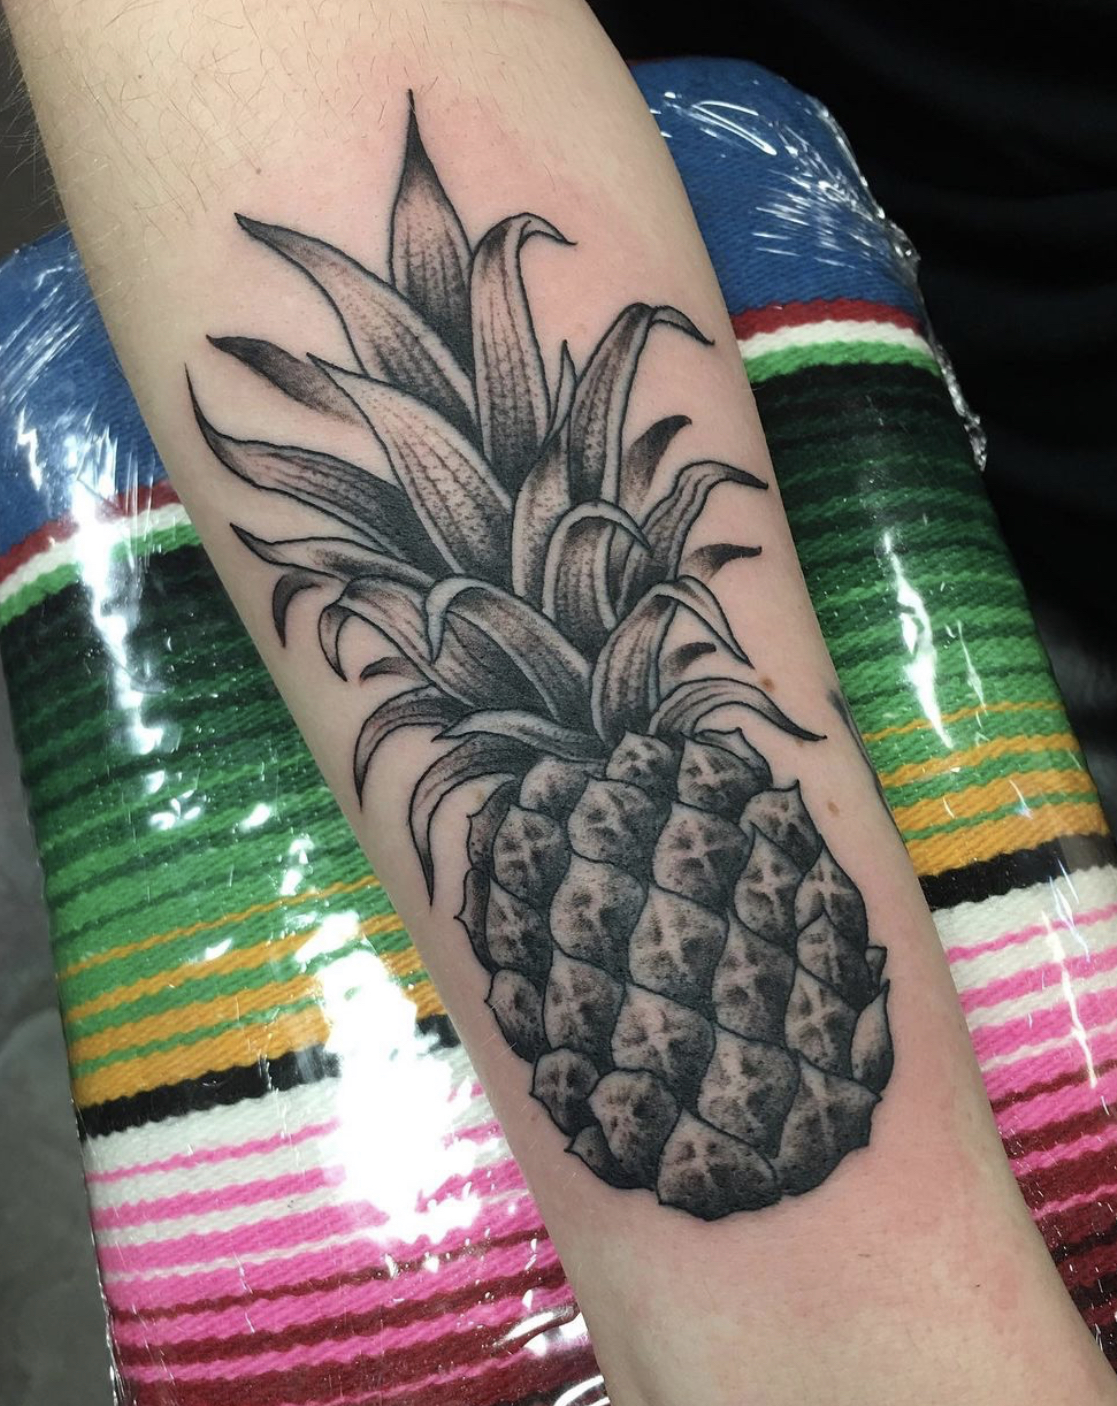 Pineapple tattoo from dallas tattoo artists